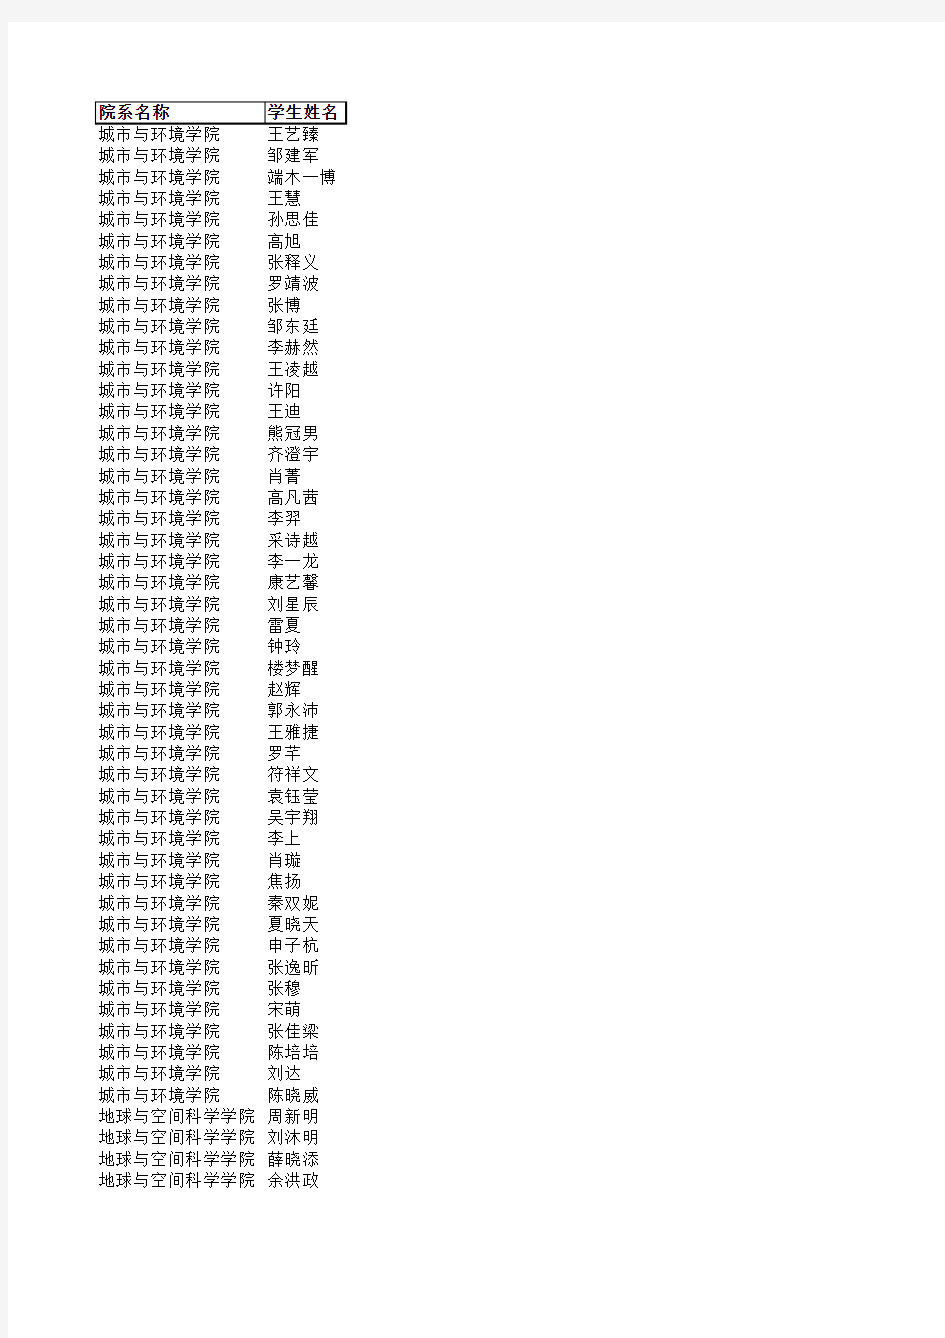 北京大学2015届本科毕业生推荐免试研究生公示名单